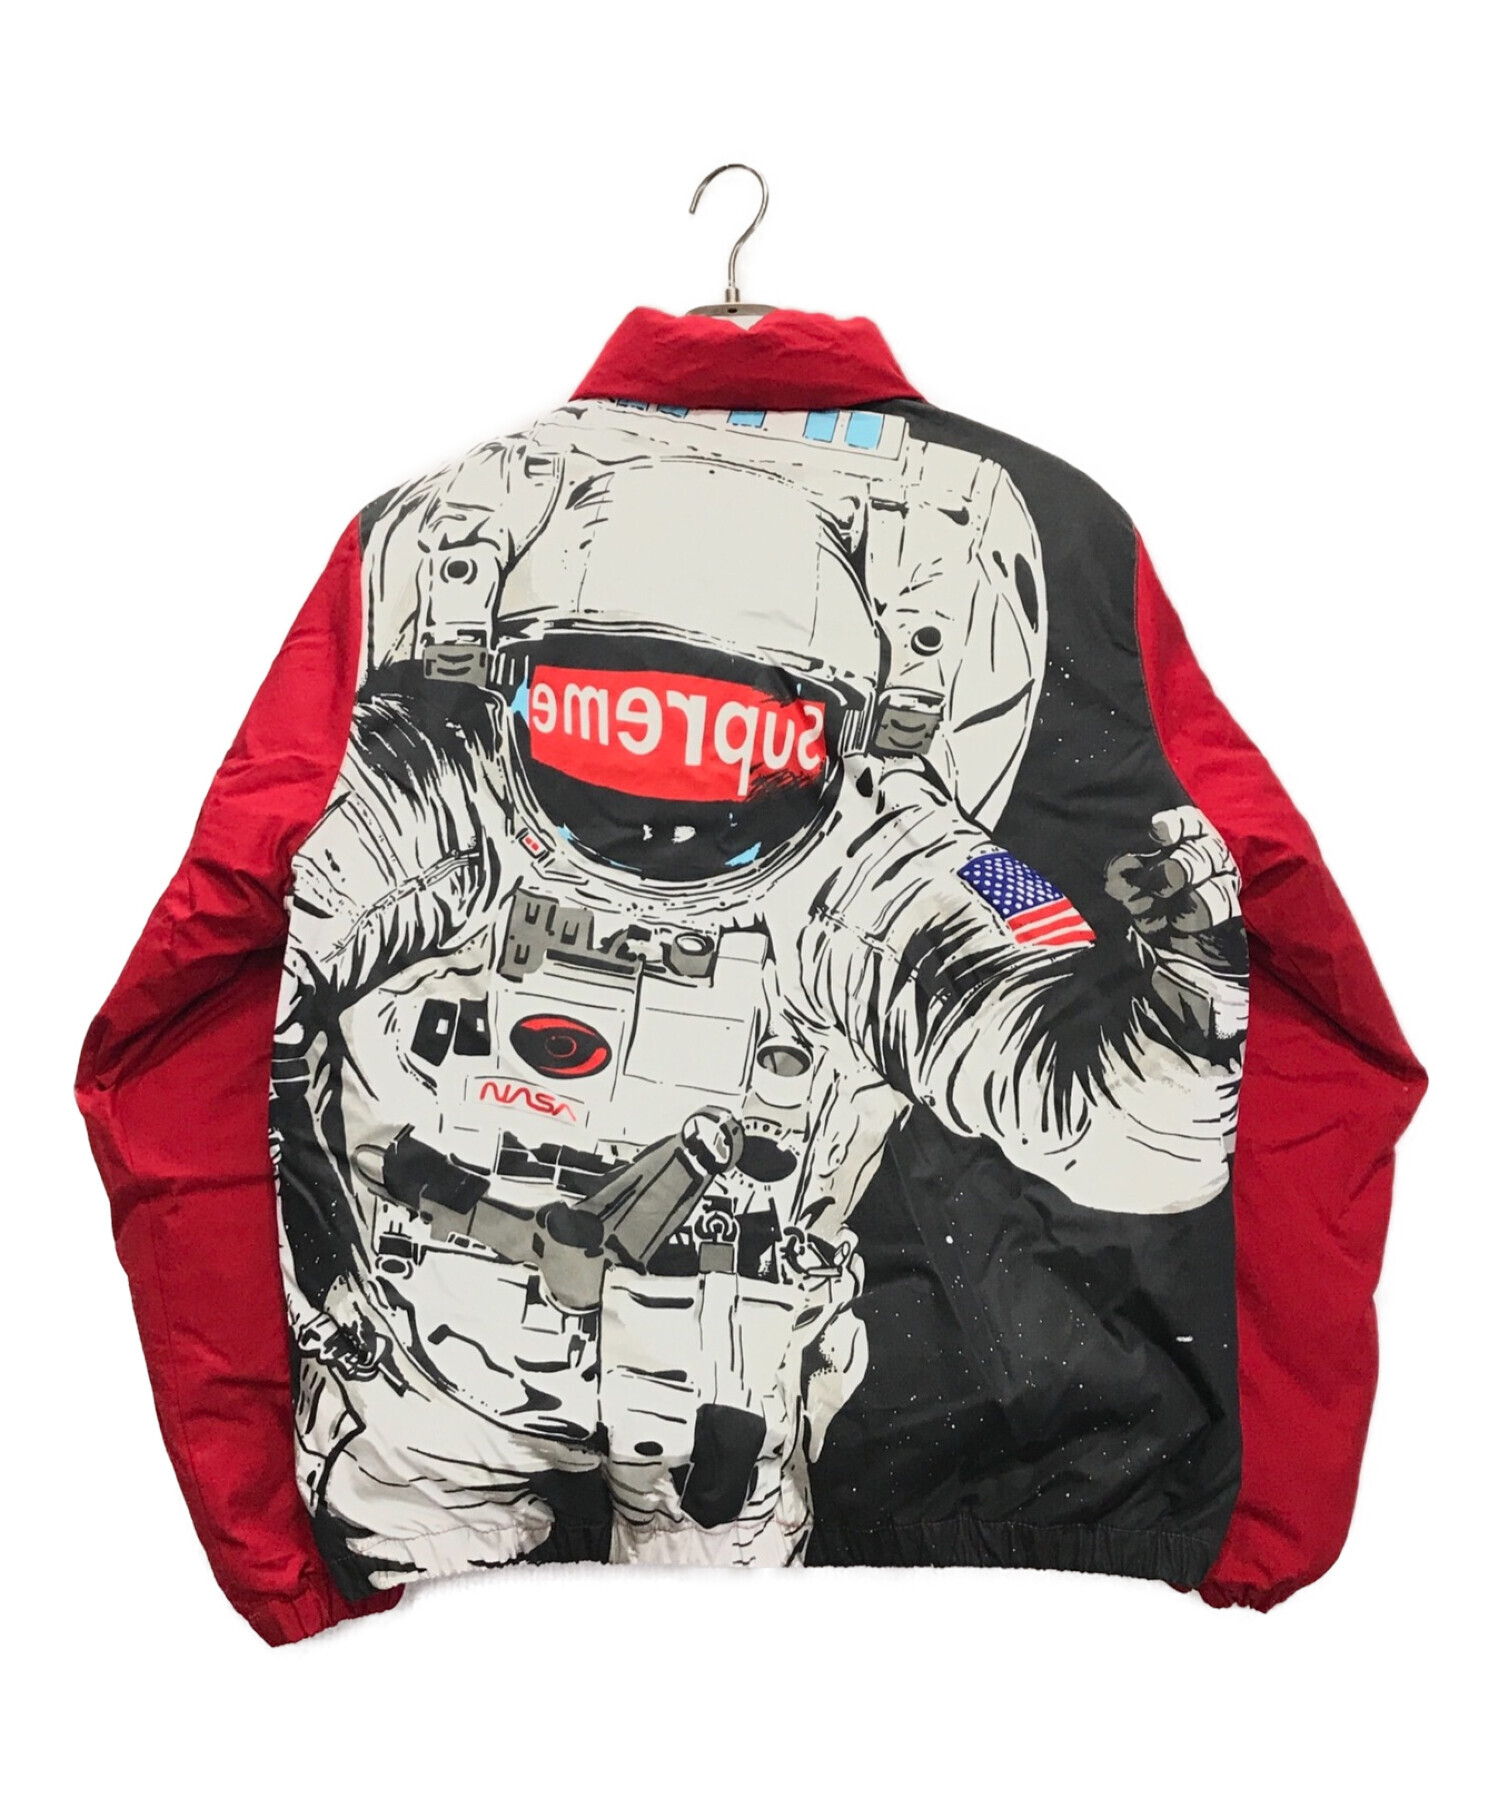 Supreme (シュプリーム) Astronaut Puffy Jacket レッド サイズ:M